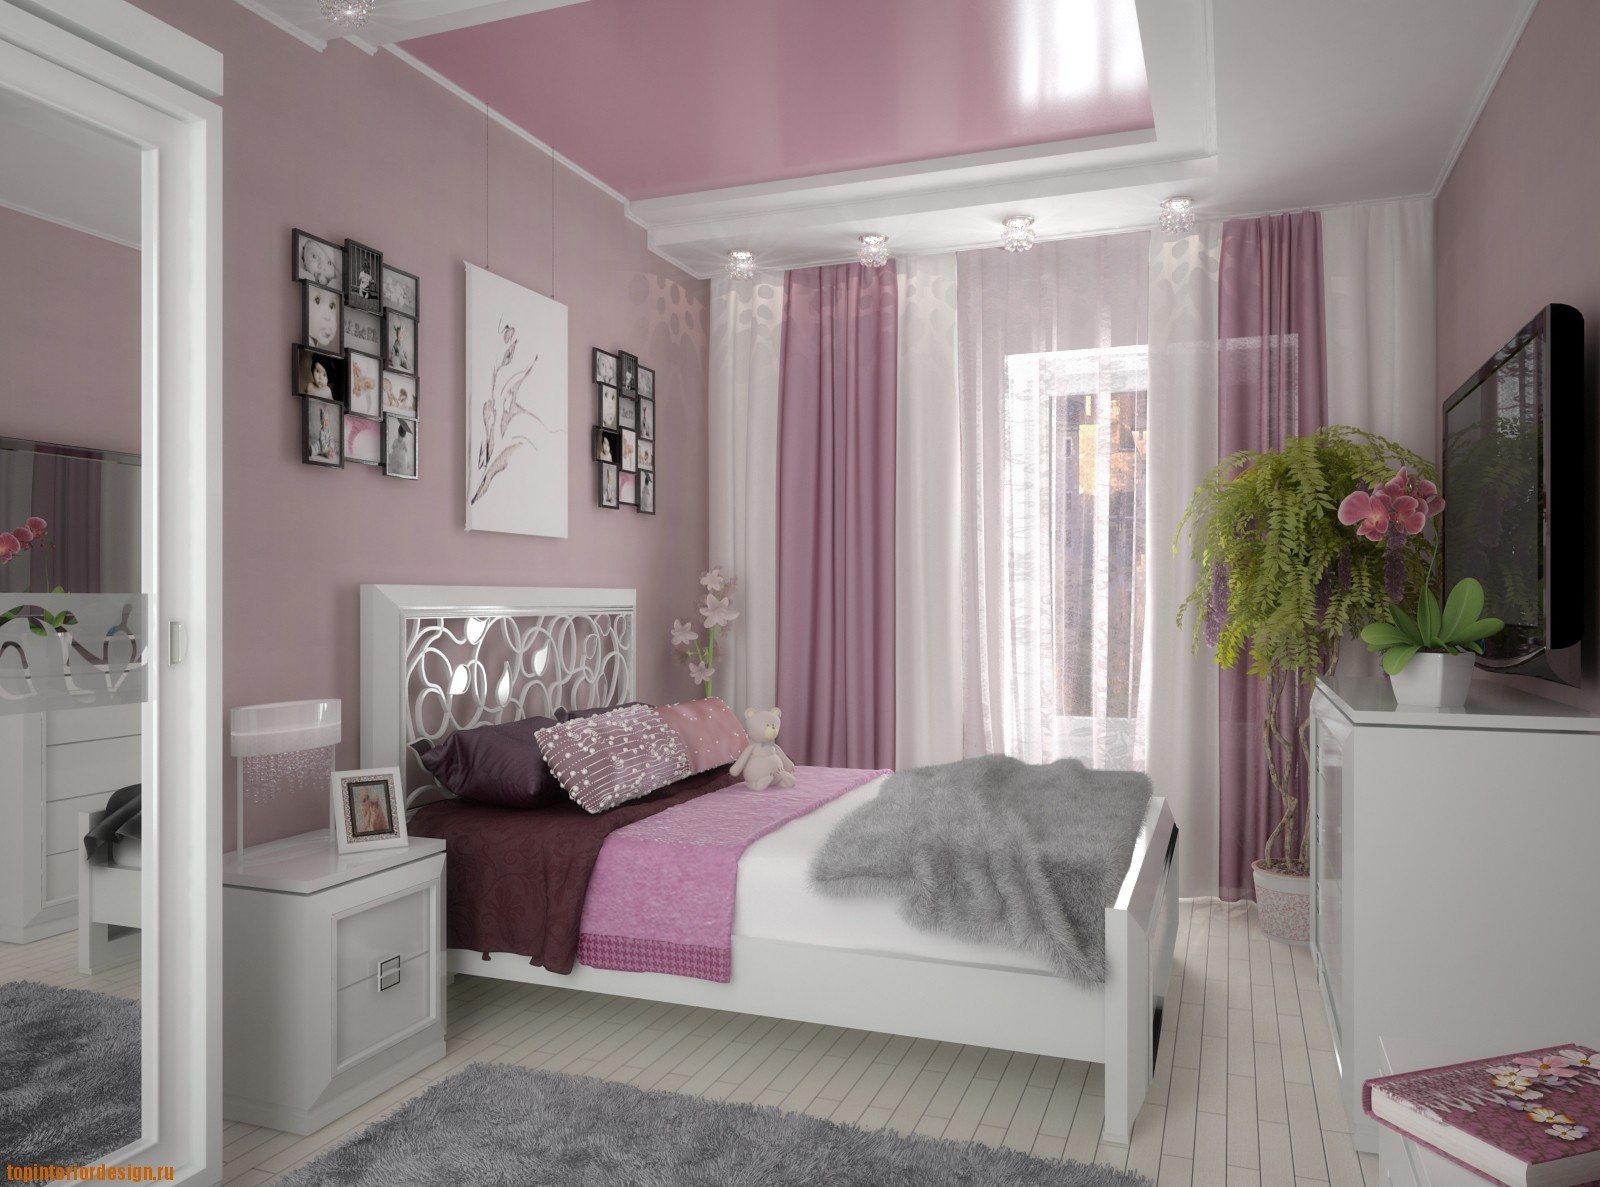 Комната в розовых тонах. Интерьер комнаты для девочки. Спальня в розовых тонах. Интерьер спальни для девушки. Спальня для девочки в розовых тонах.